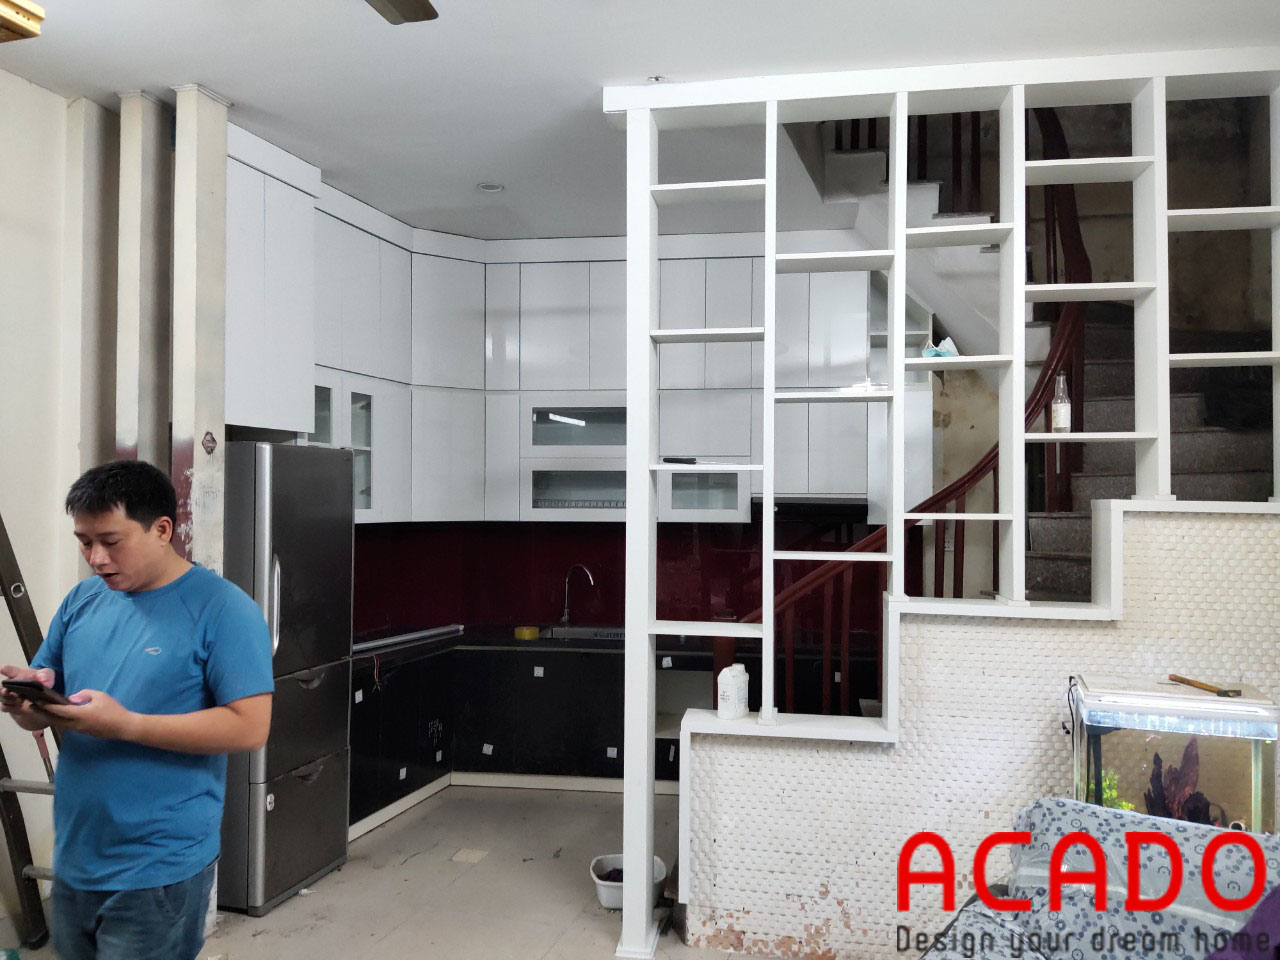 ACADO đã hoàn thiện công trình tủ bếp và bàn giao cho gia đình anh Hùng